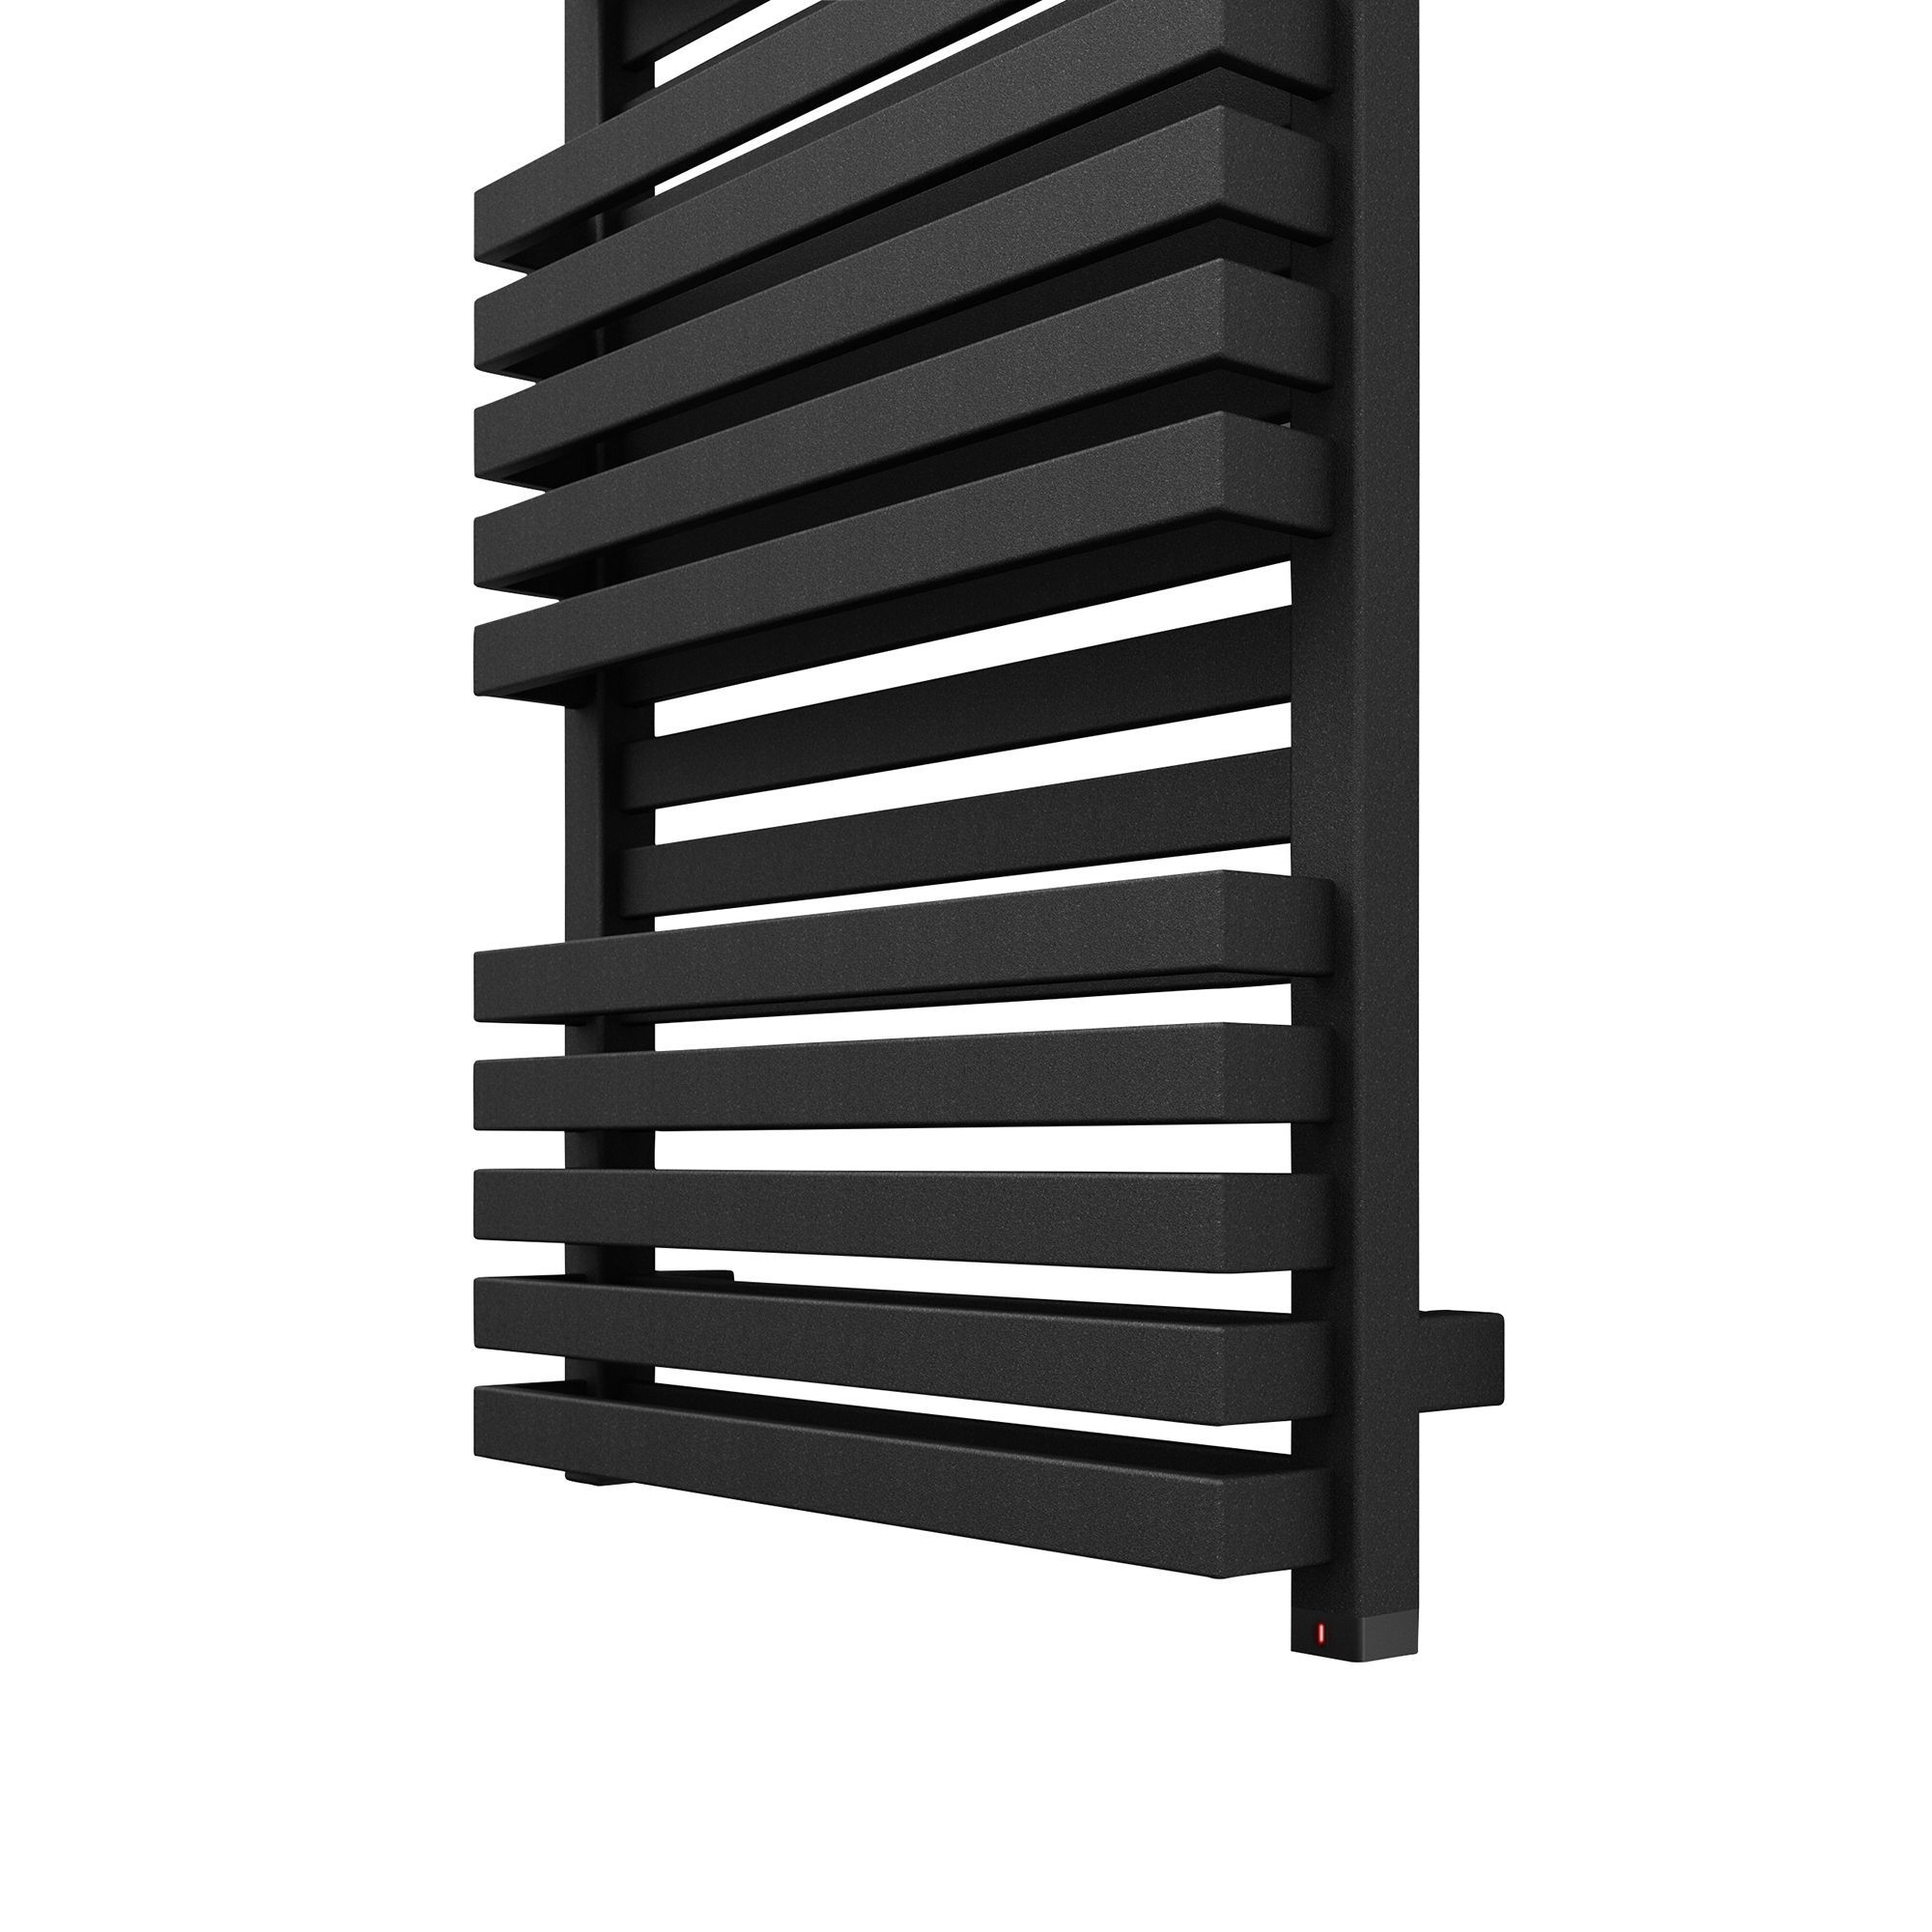 Terma Quadrus Electric Metallic black Towel warmer (W)450mm x (H)870mm